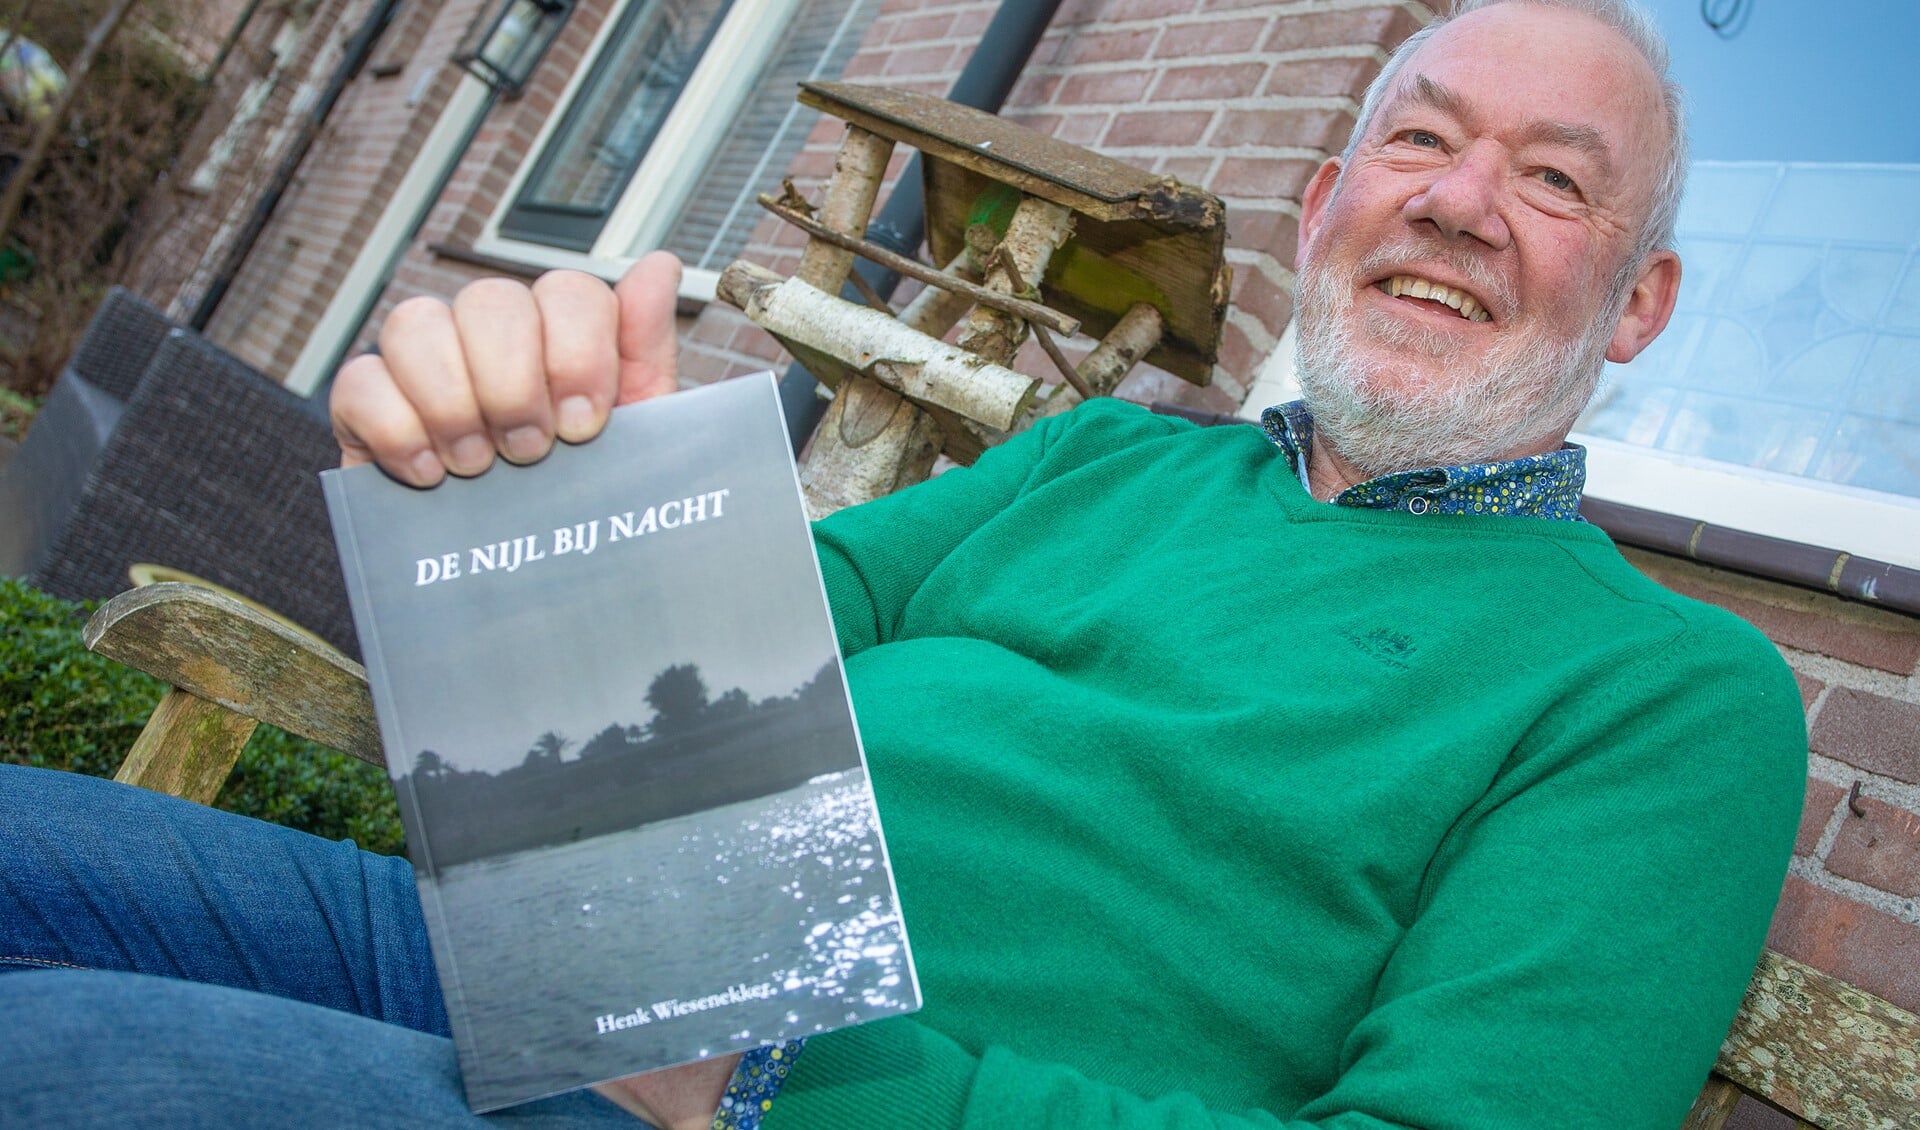 Henk Wiesenekker met zijn vierde boek.